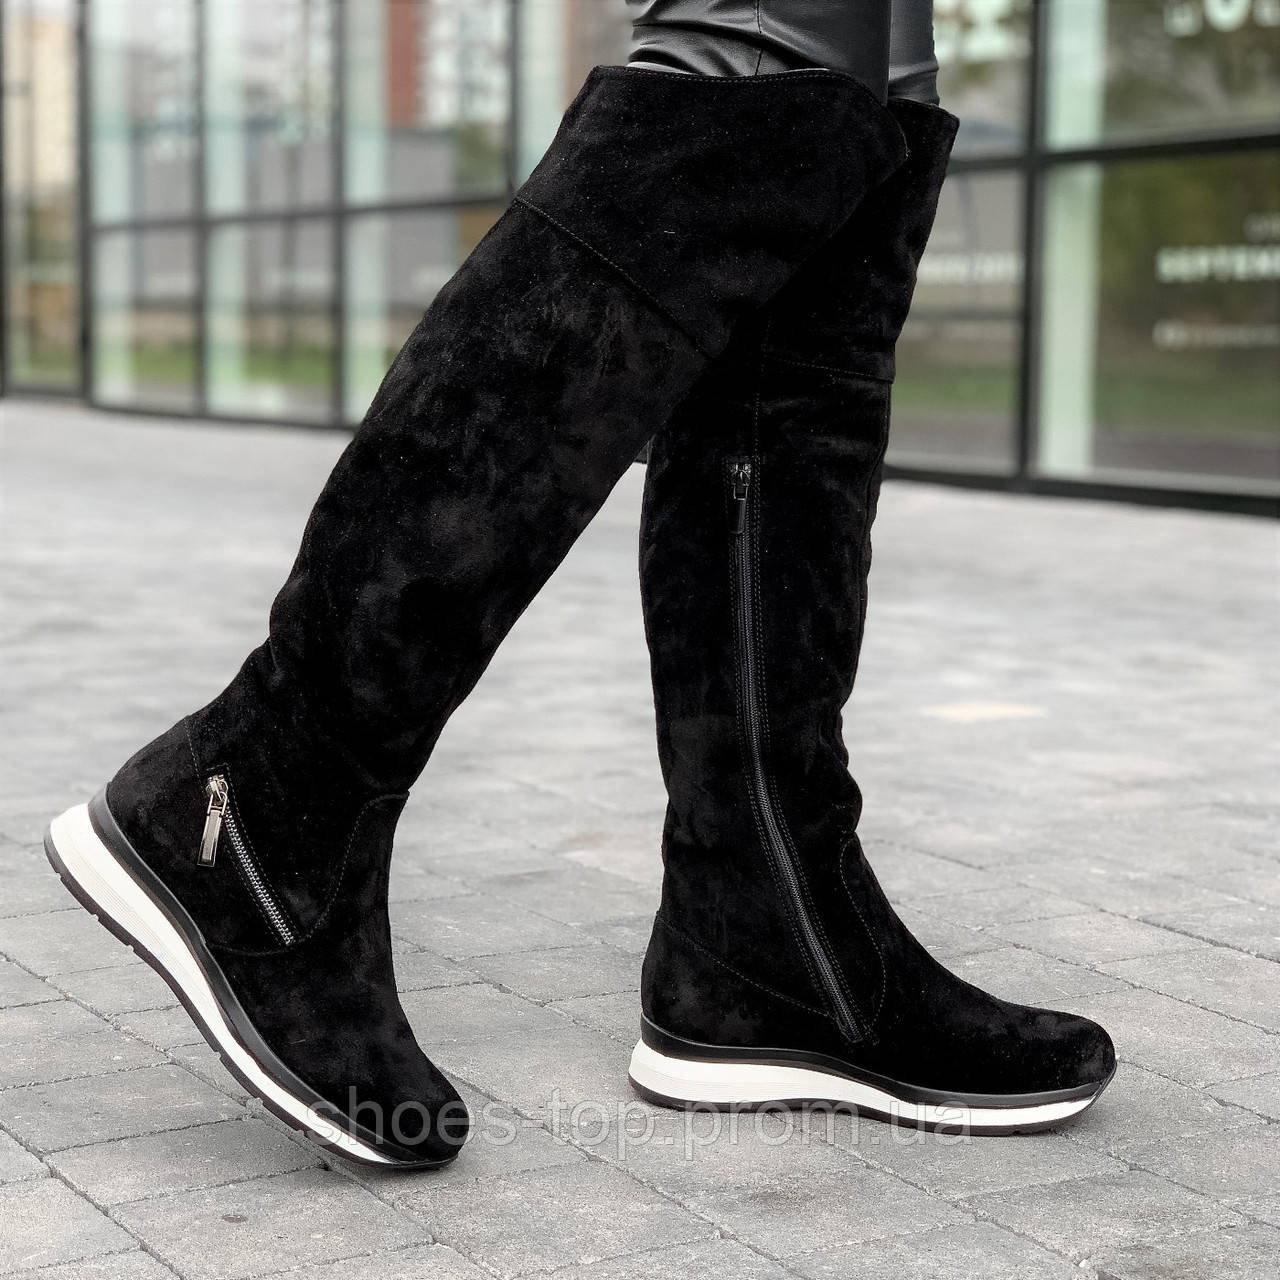 Cапоги ботфорты женские без каблука зимние замшевые черные (Код: Ш1611)